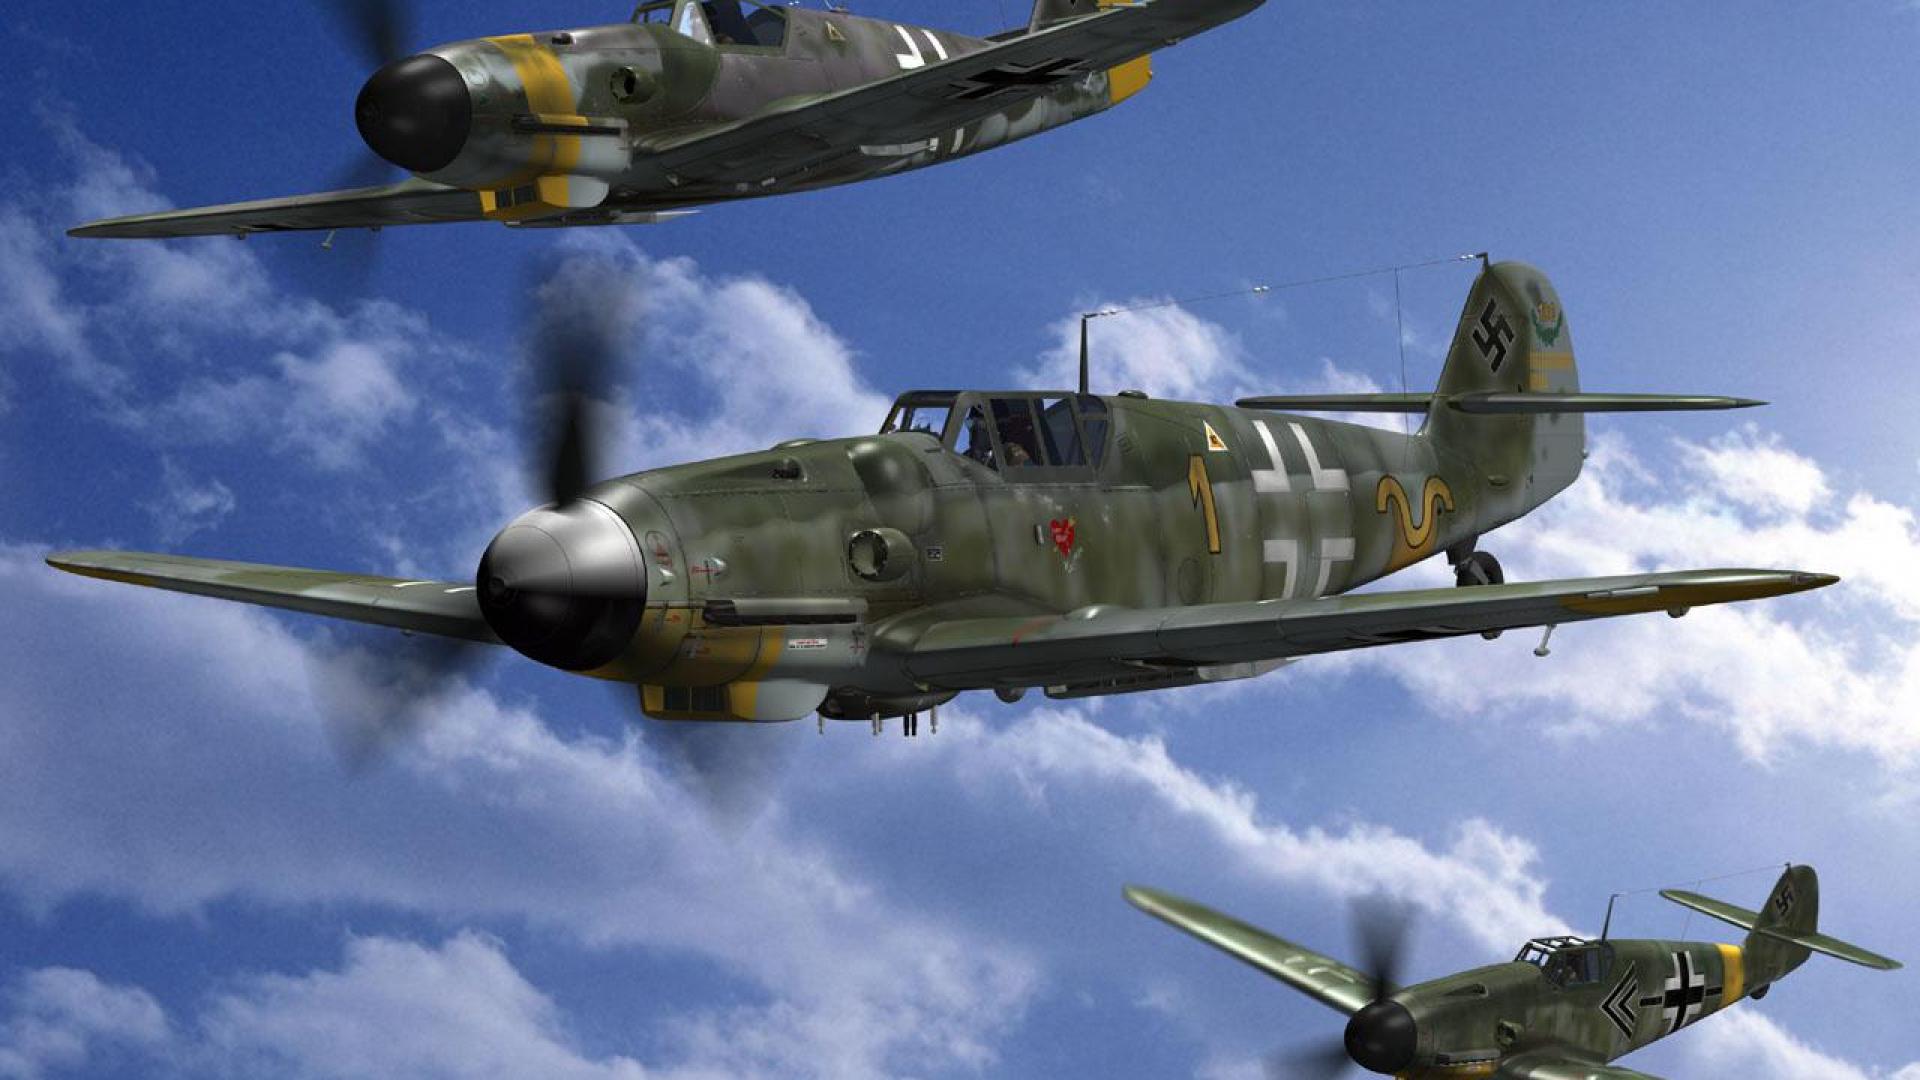 Bf109 Wallpaper. Bf109 Wallpaper, War Thunder Bf109 Wallpaper and Bf109 Wallpaper 1920 10180